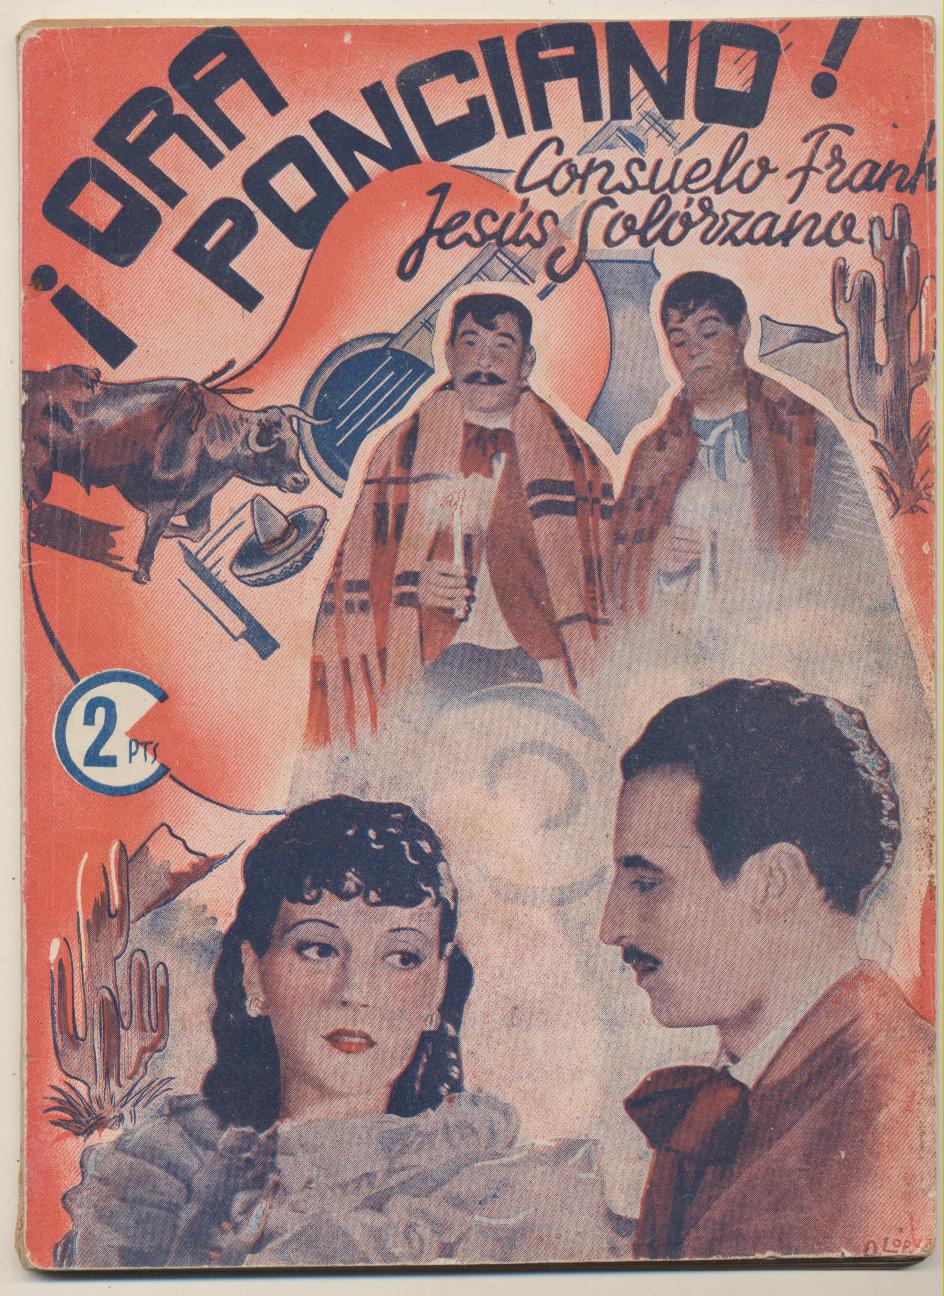 Ora Ponciano. Colección Cinema. 62 páginas con fotografías de la película